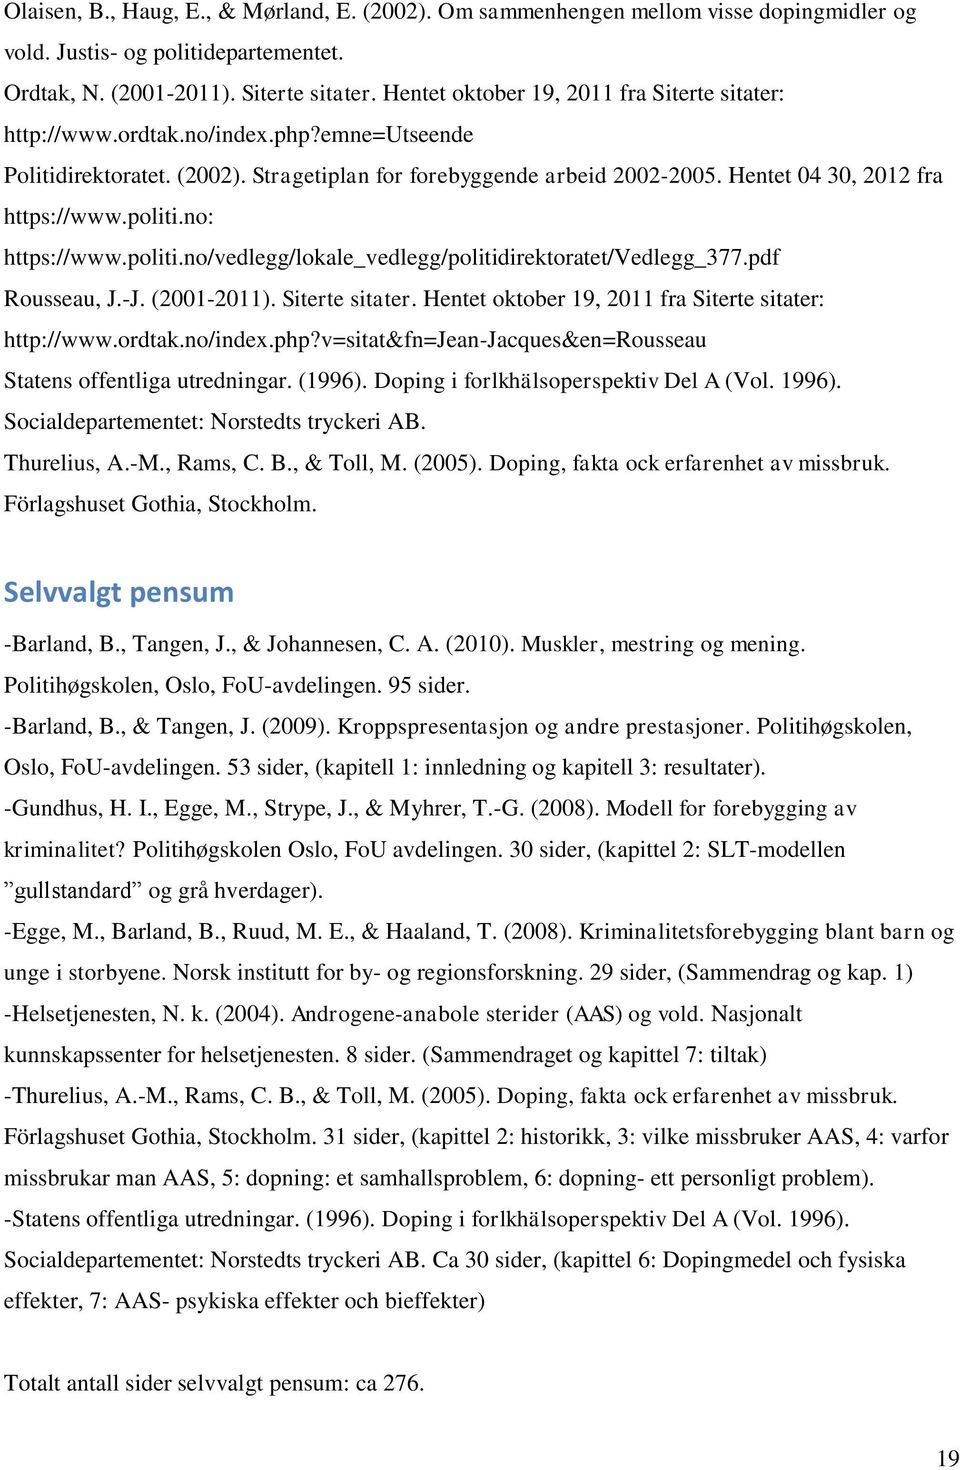 Hentet 04 30, 2012 fra https://www.politi.no: https://www.politi.no/vedlegg/lokale_vedlegg/politidirektoratet/vedlegg_377.pdf Rousseau, J.-J. (2001-2011). Siterte sitater.